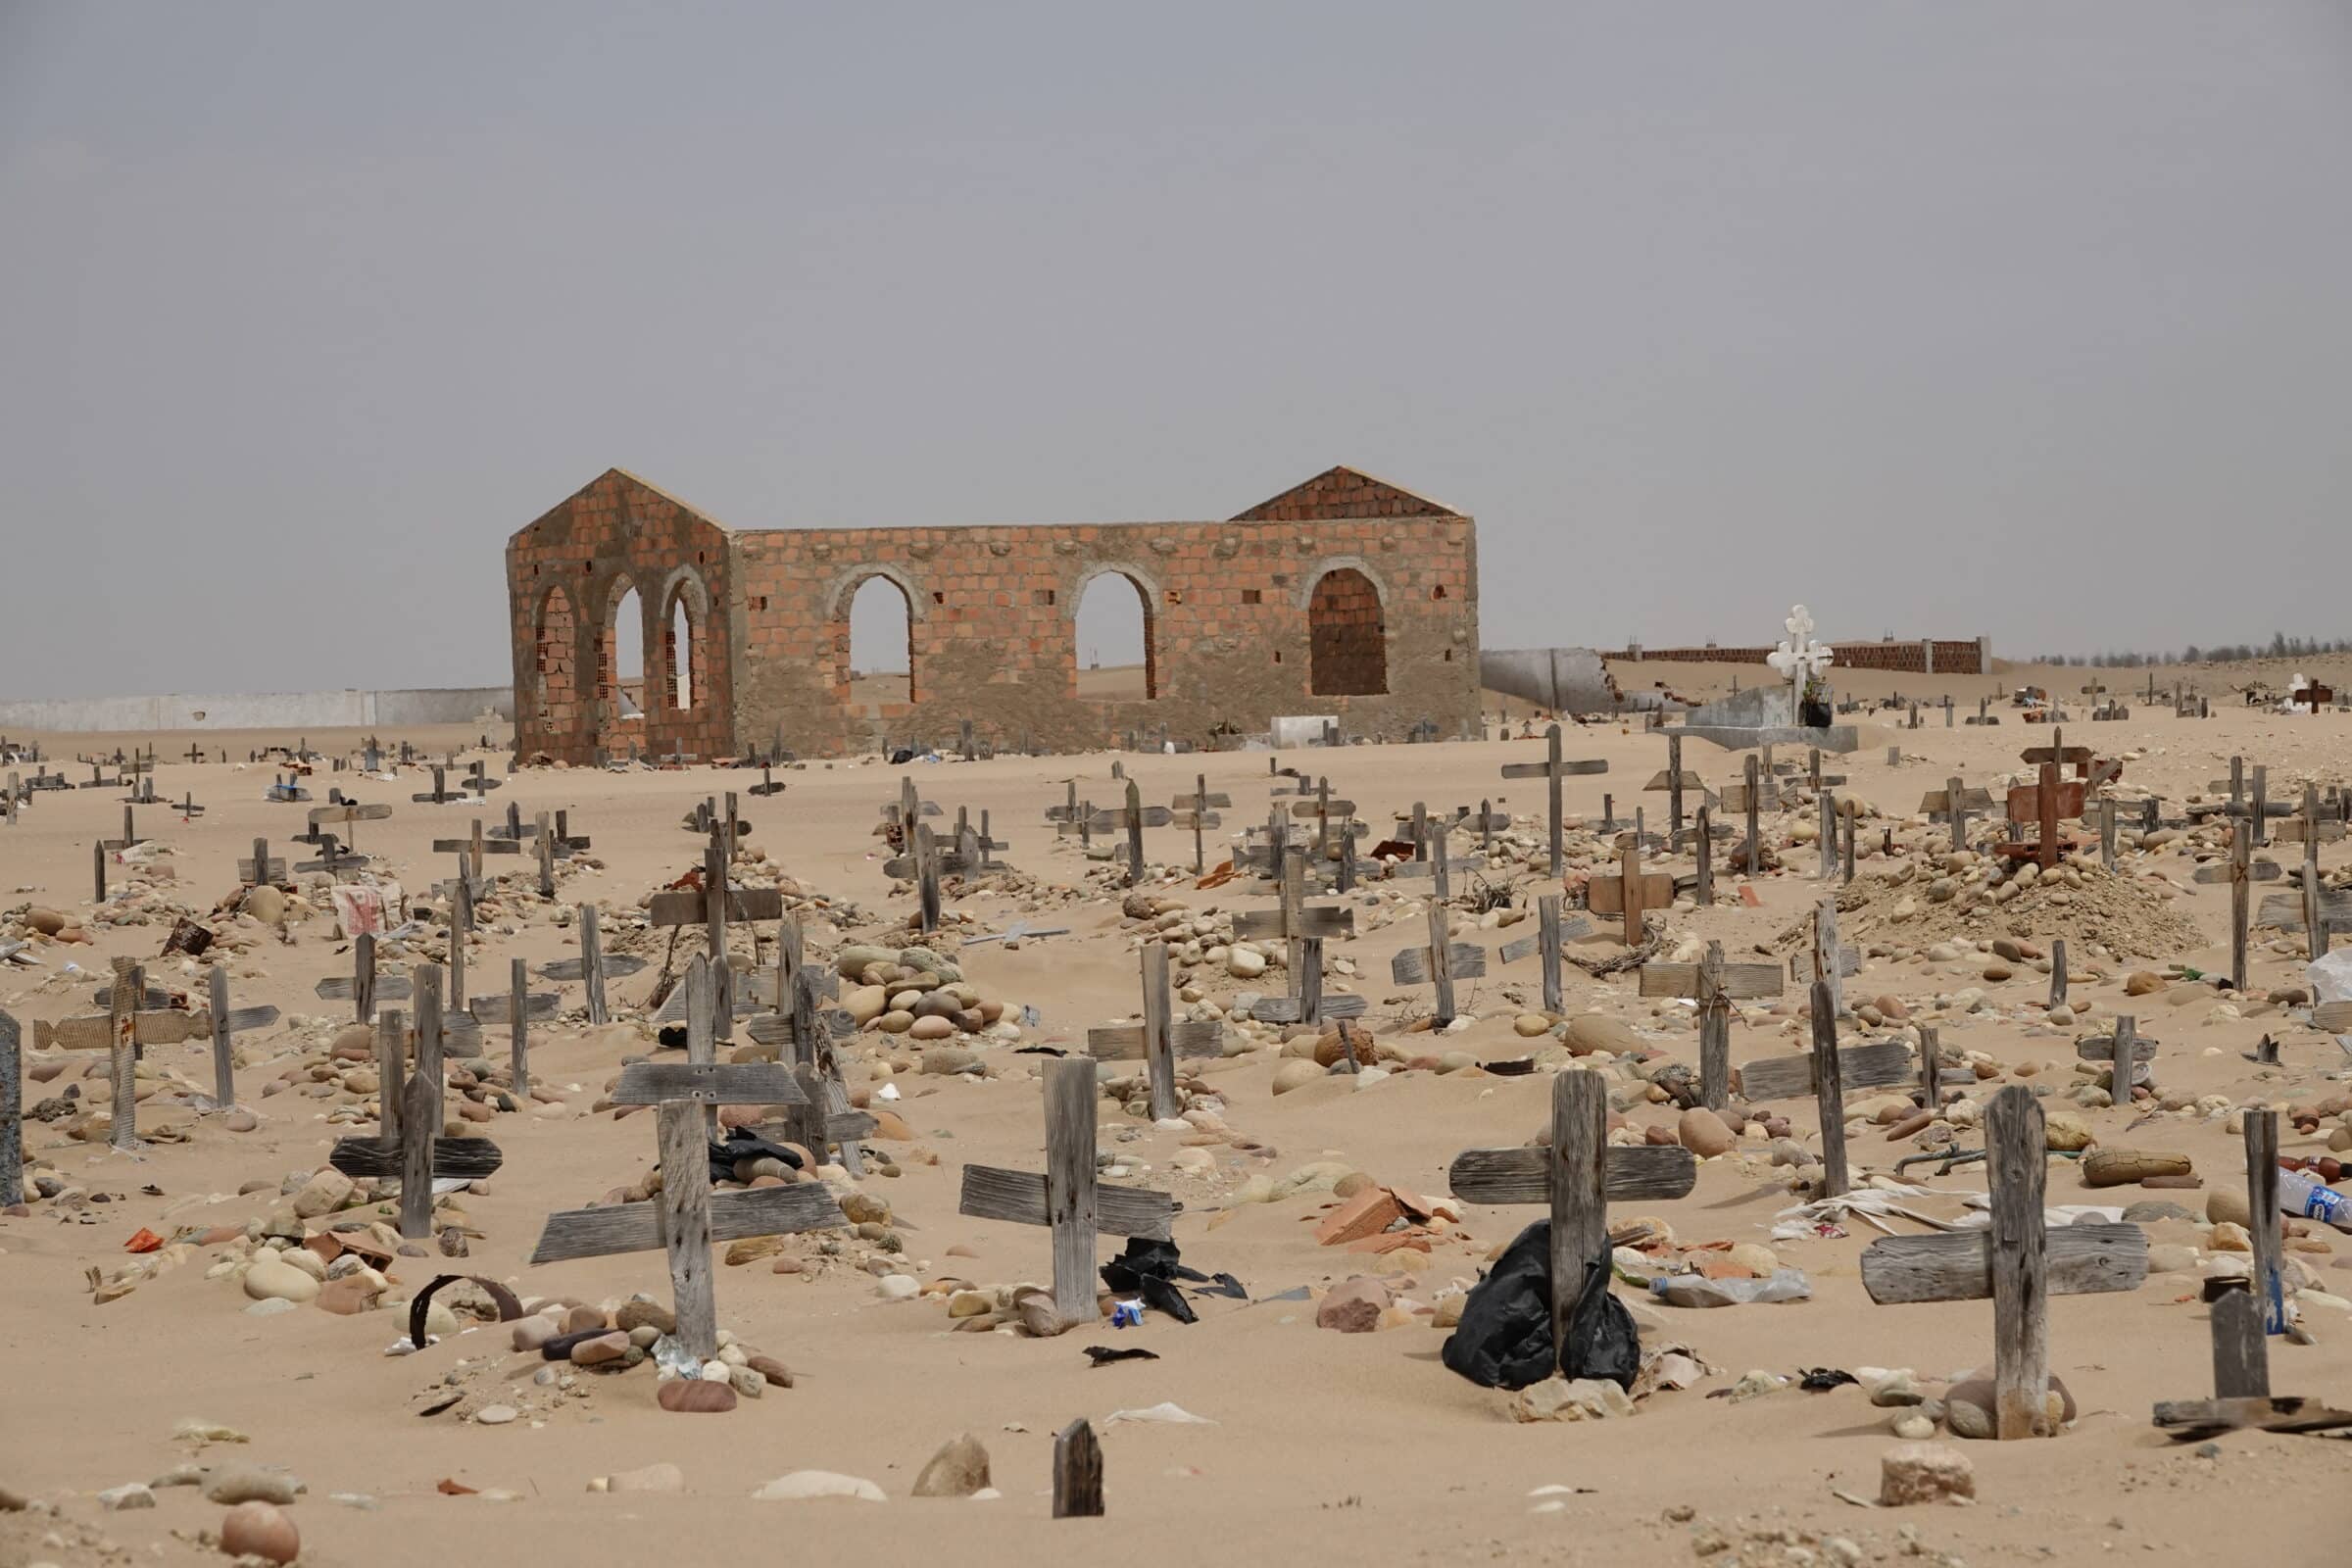 Begraafplaats in woestijn | Bezienswaardigheden Angola